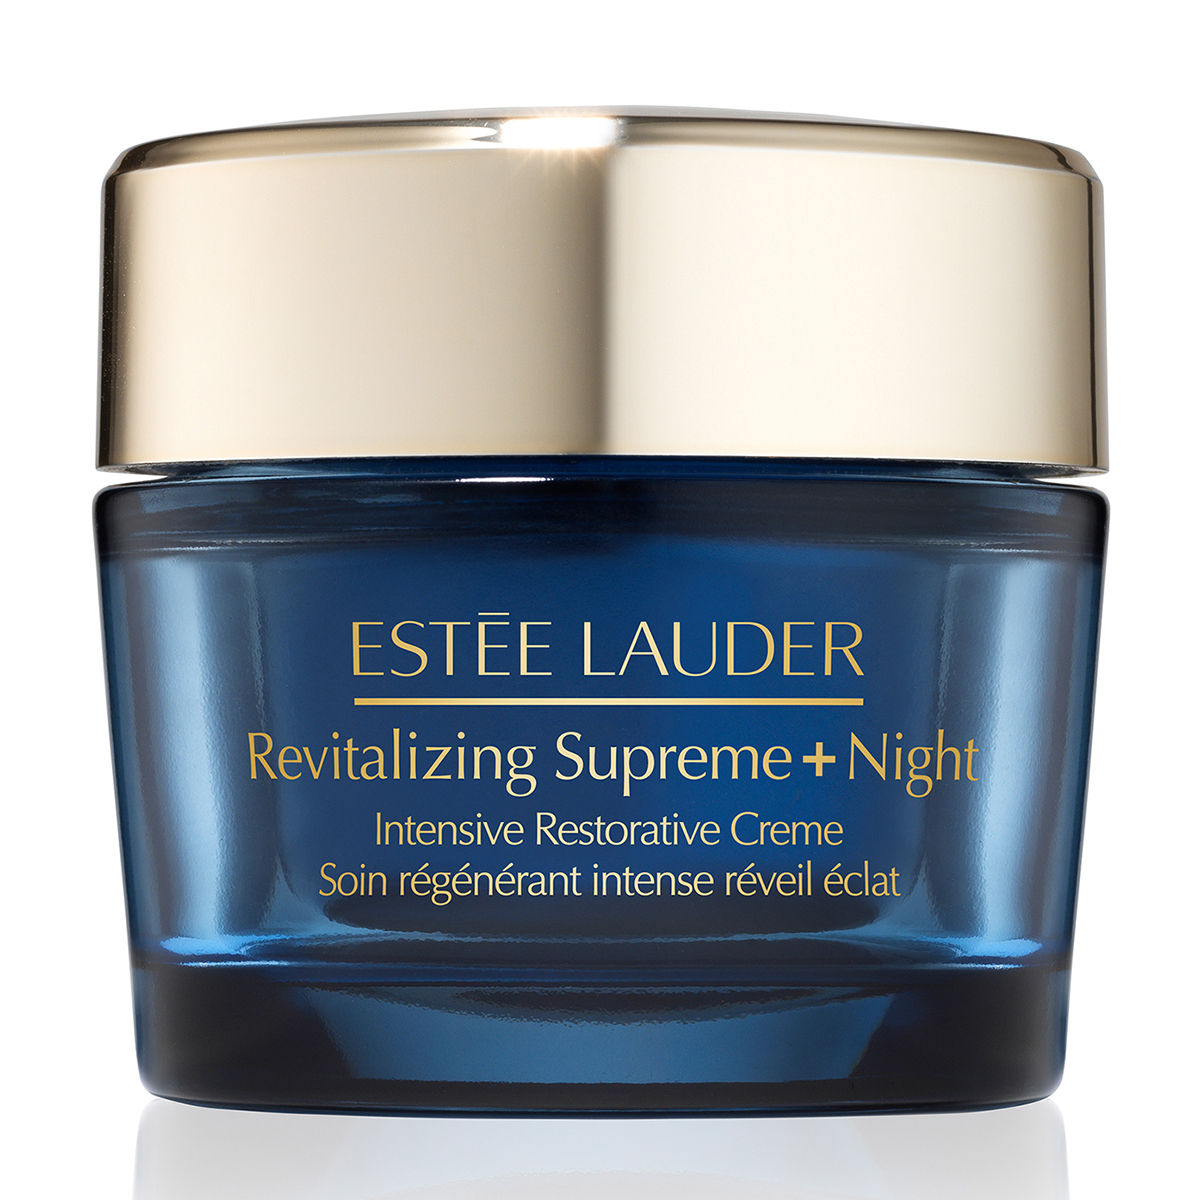 Estee Lauder(tm) Revitalizing Supreme + Night